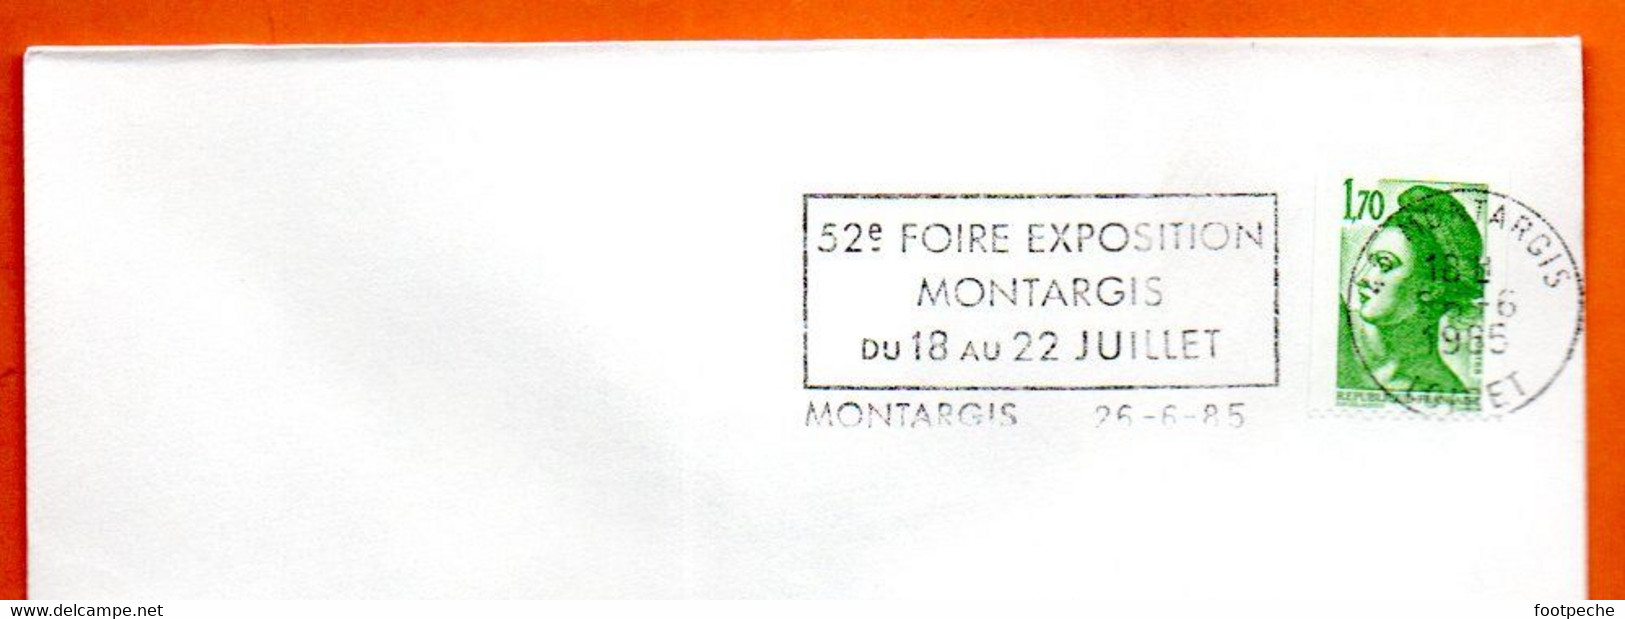 45 MONTARGIS  52° FOIRE 1985  Lettre Entière N° CD 406 - Maschinenstempel (Werbestempel)